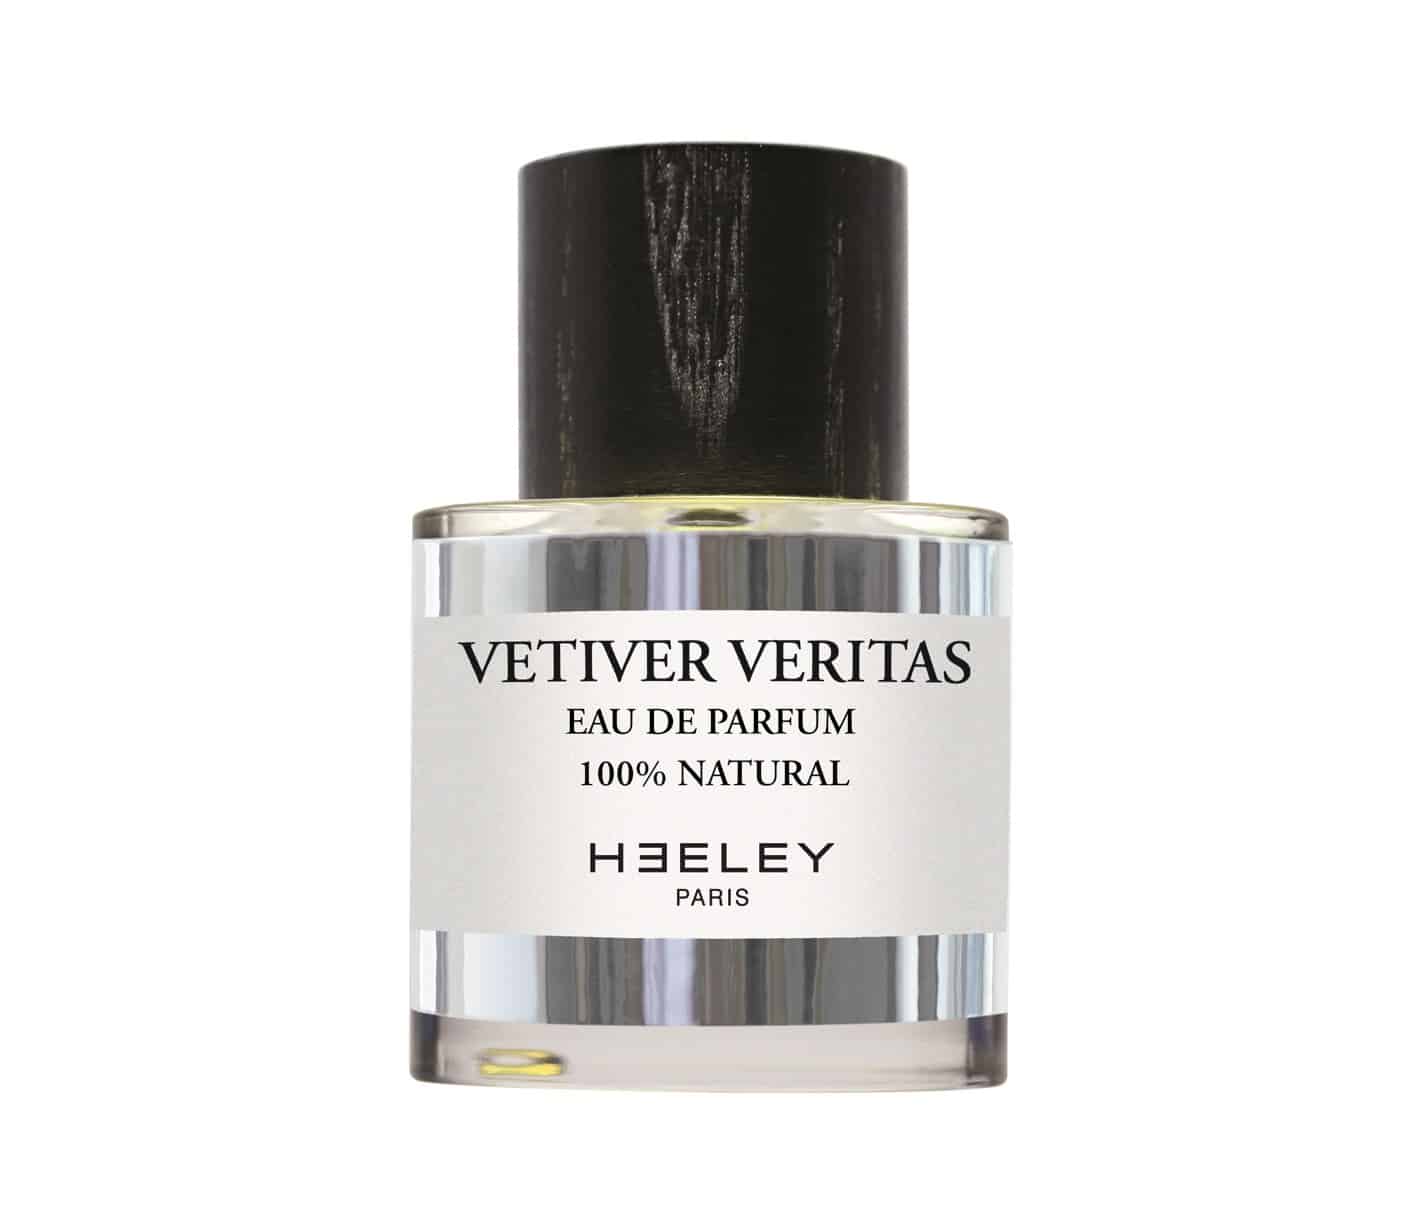 HEELEY PARFUMS presenta  Vetiver Veritas, il nuovo profumo 100% naturale - Le Shopping News Il Magazine per gli Appassionati di Moda e Tendenze